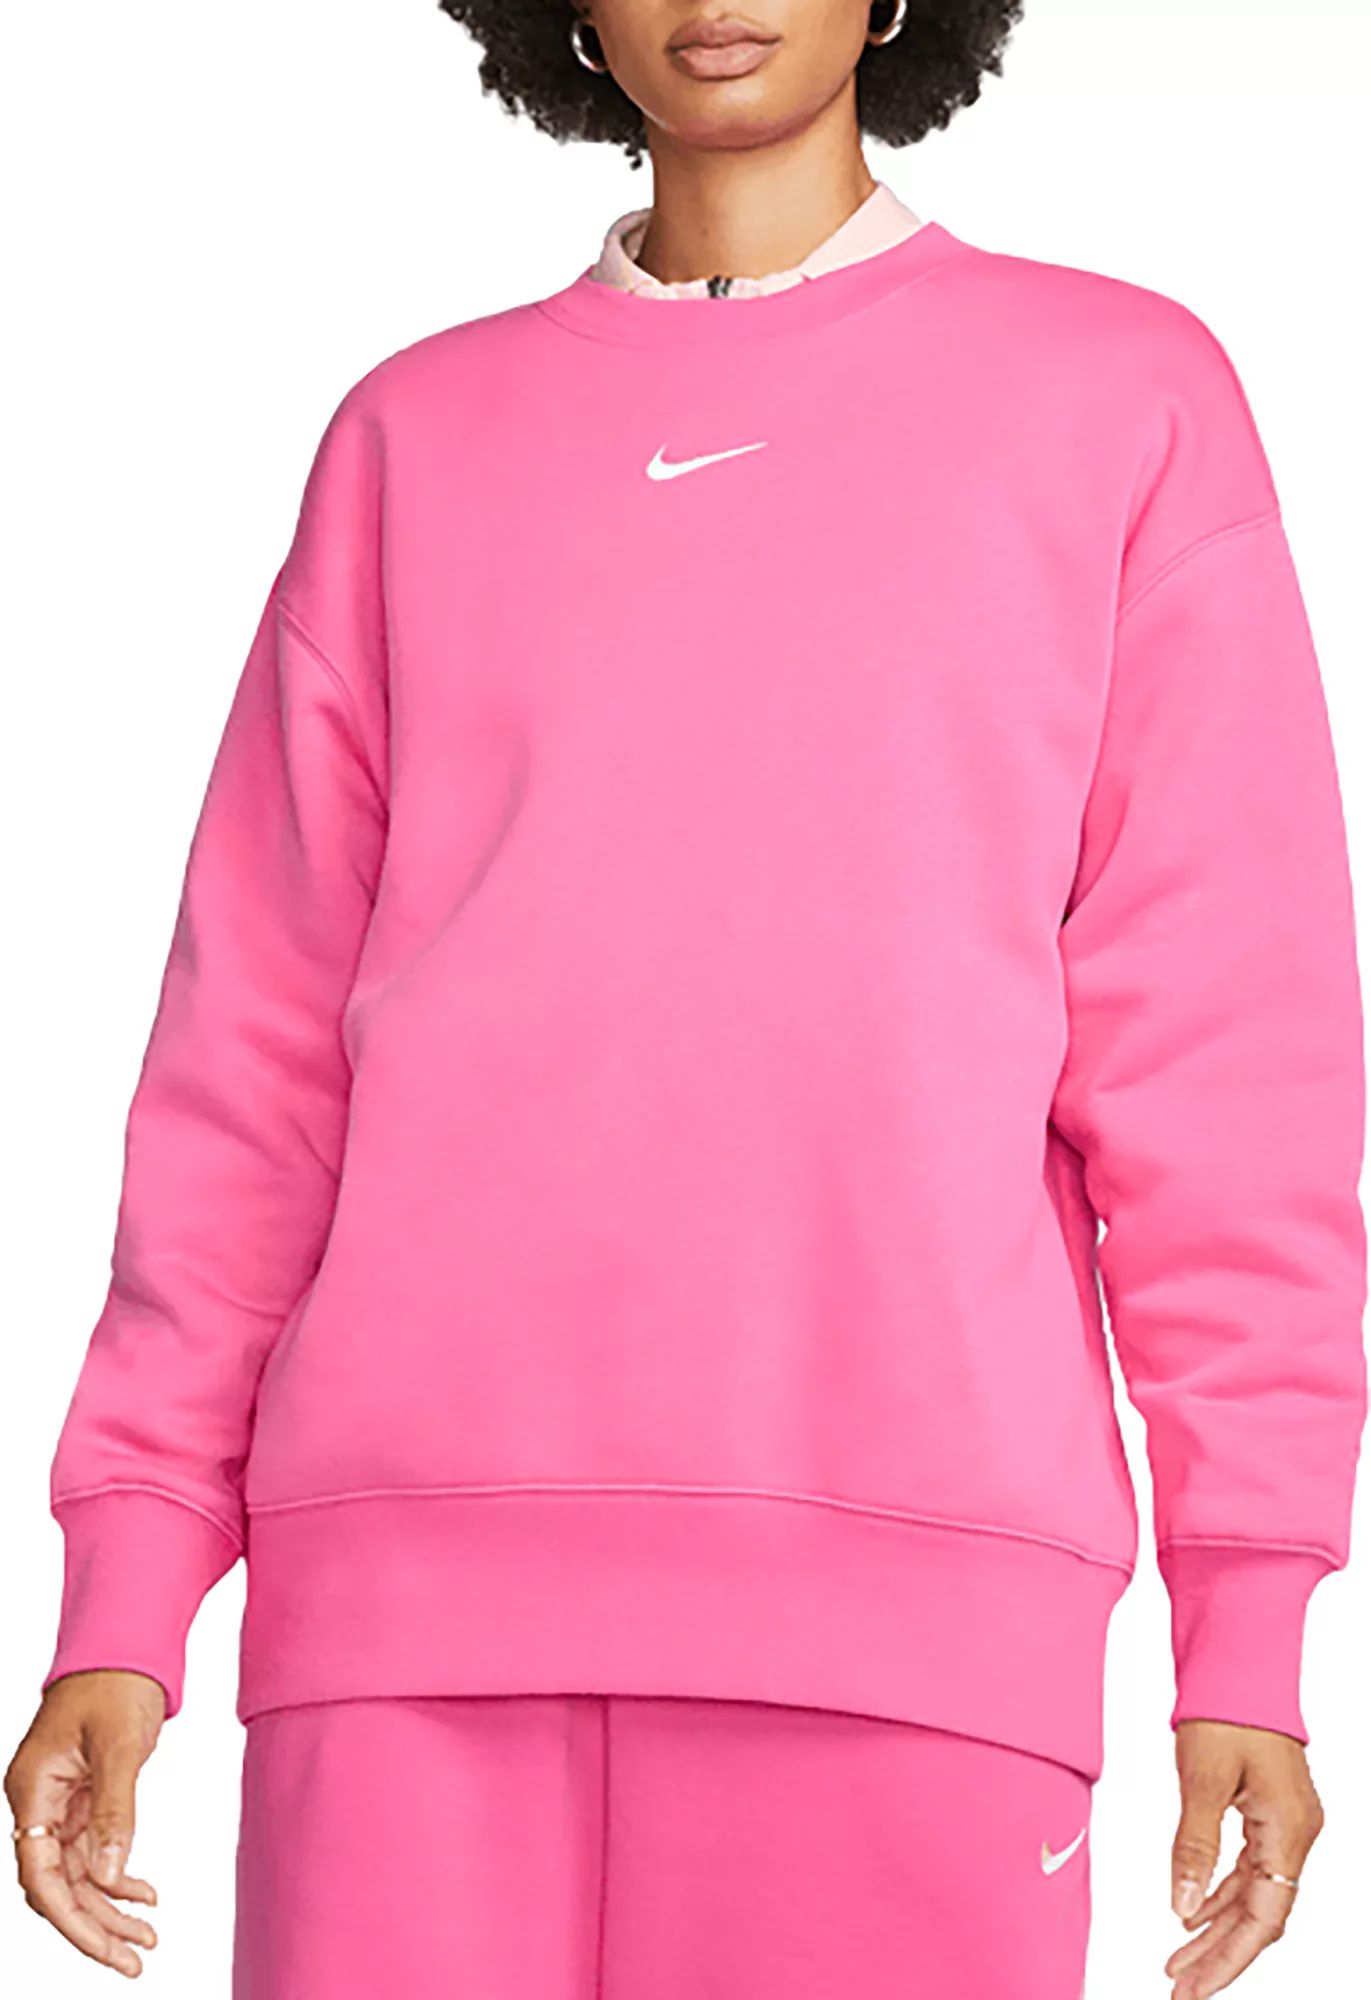 Nike Women's Sportswear Phoenix Fleece Sweatshirt, XS, Pinksicle | Dick's Sporting Goods